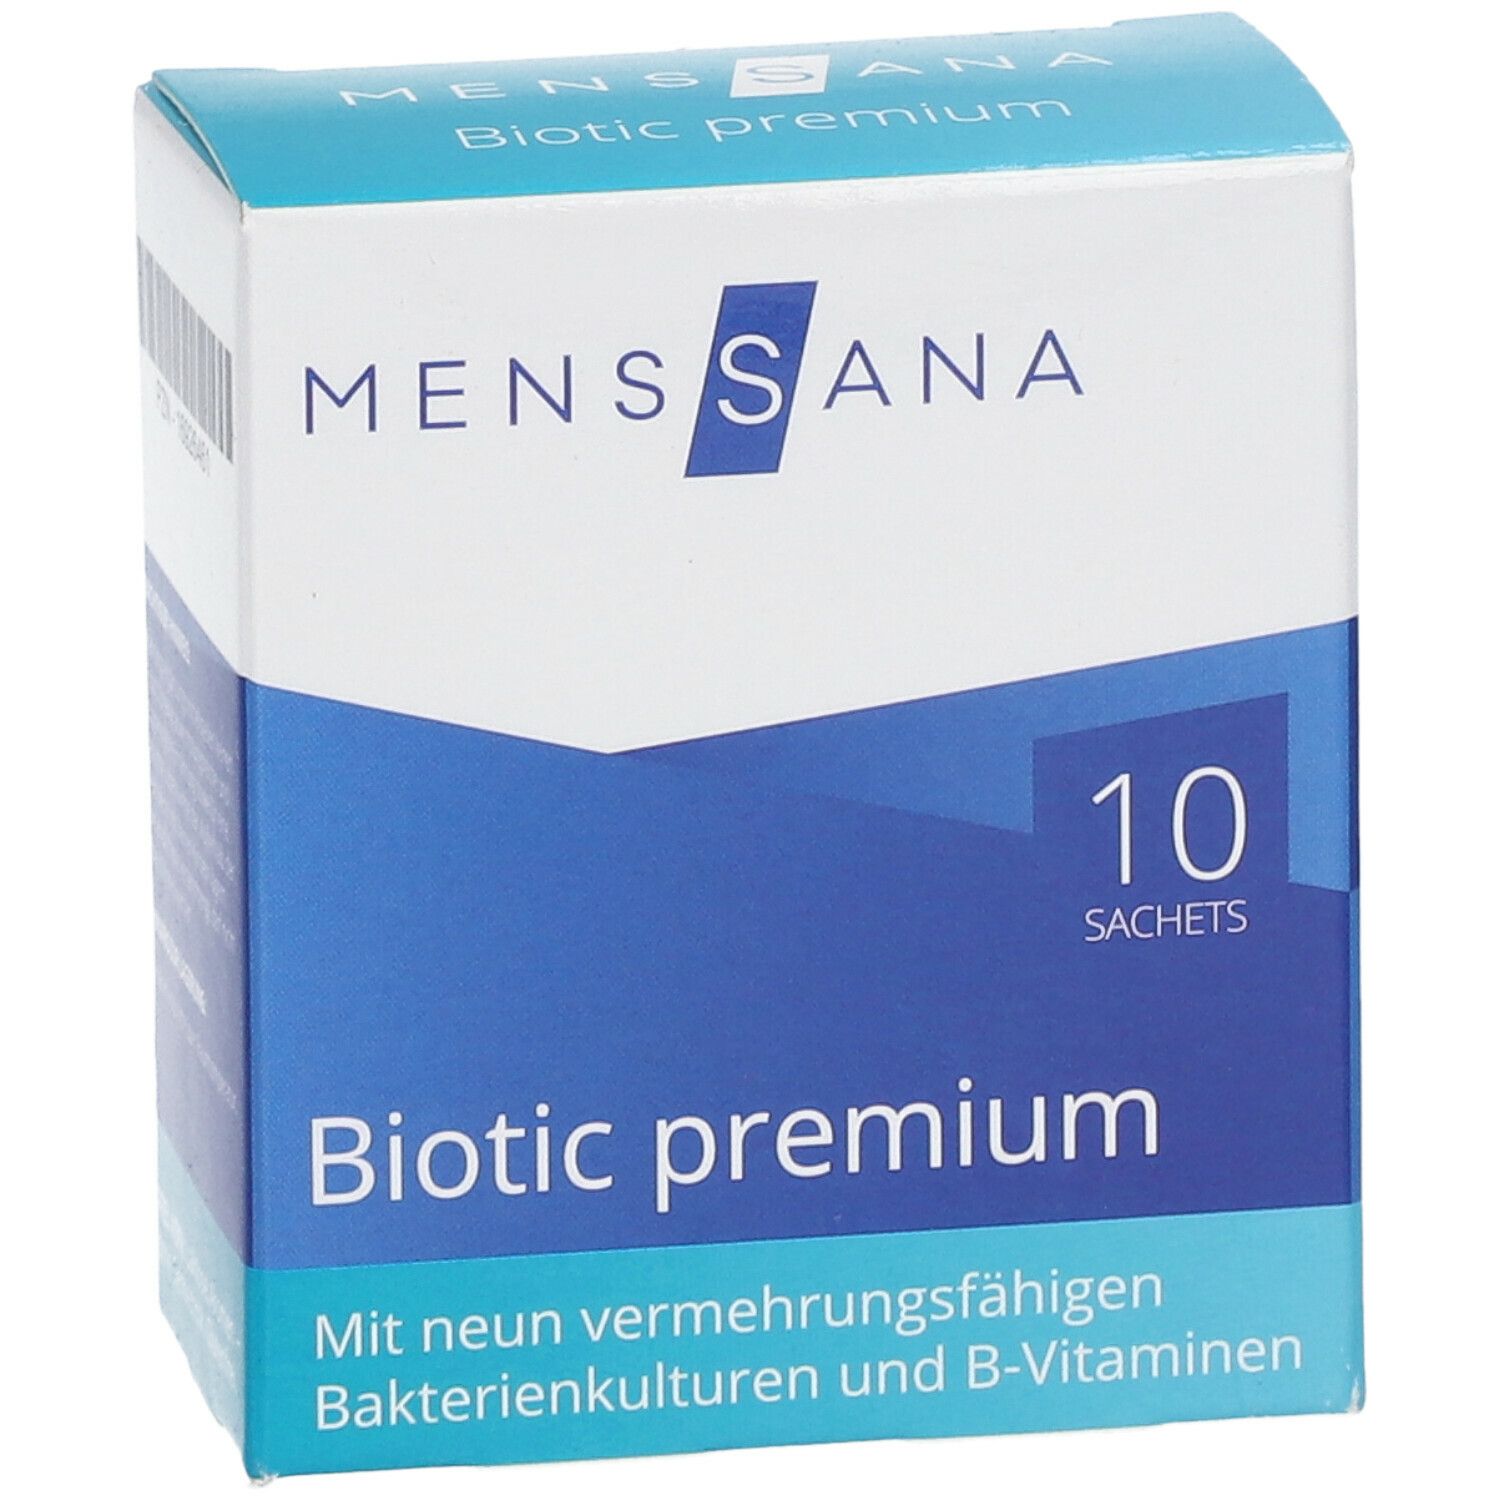 MENSSANA Biotic premium